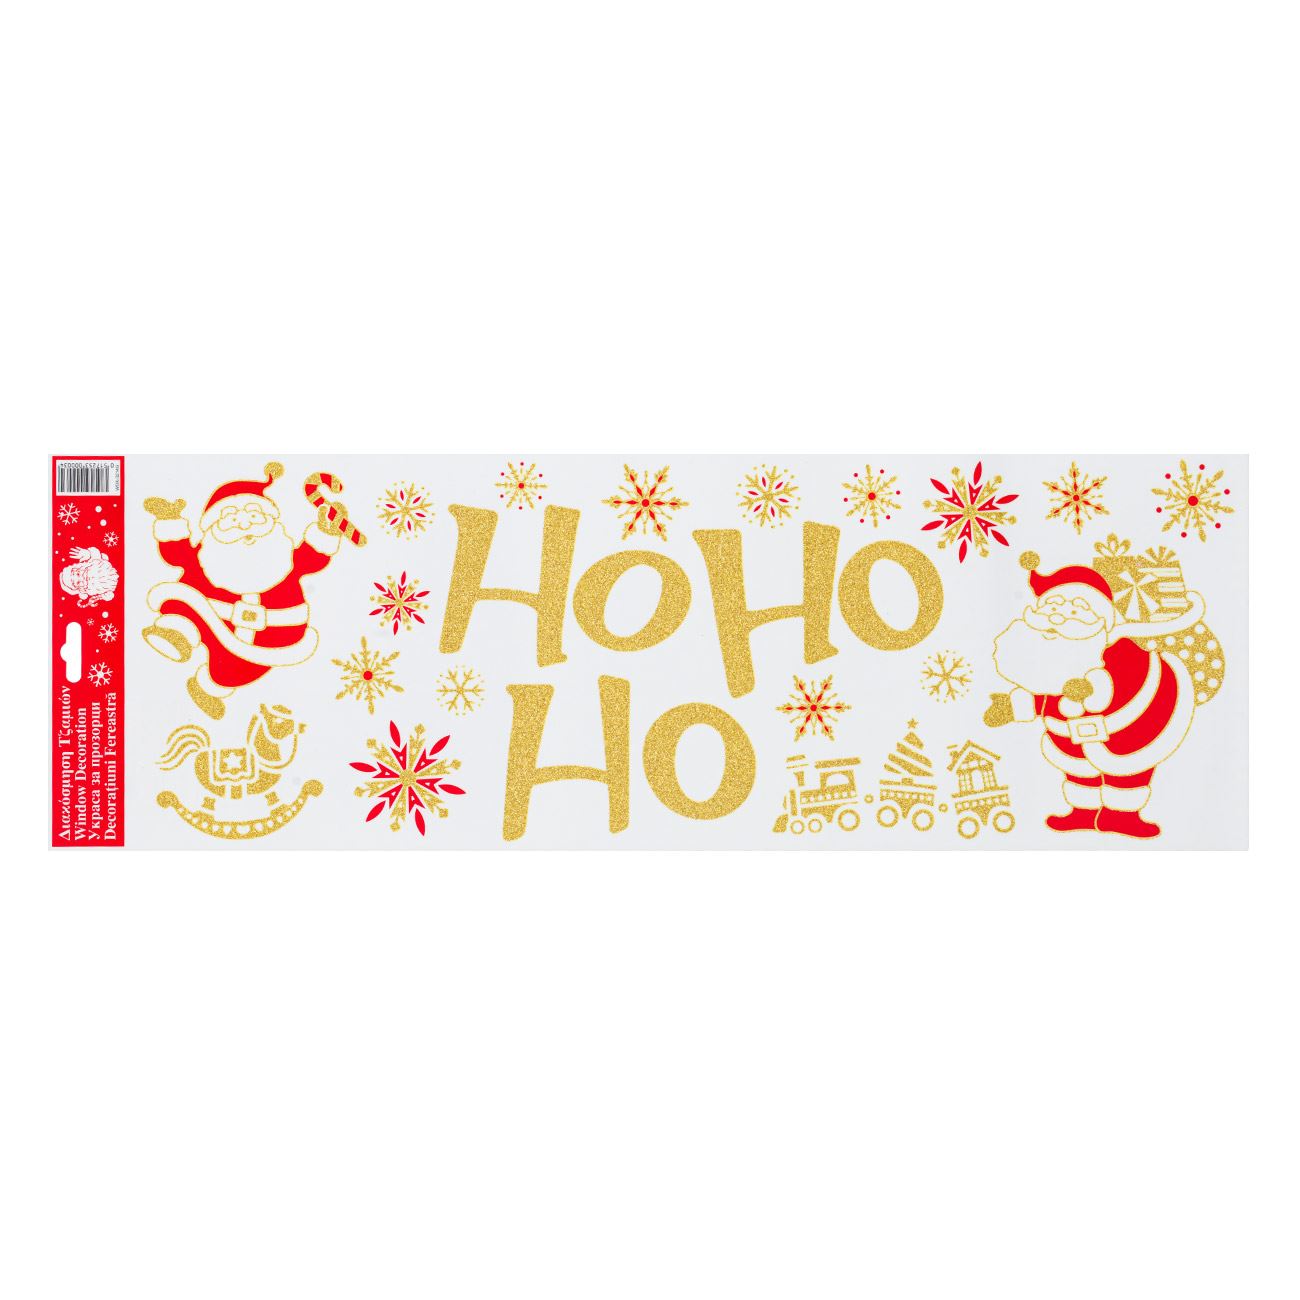 Arany csillogó karácsonyi ablakmatrica Ho Ho Ho Mikulás 20x60 cm